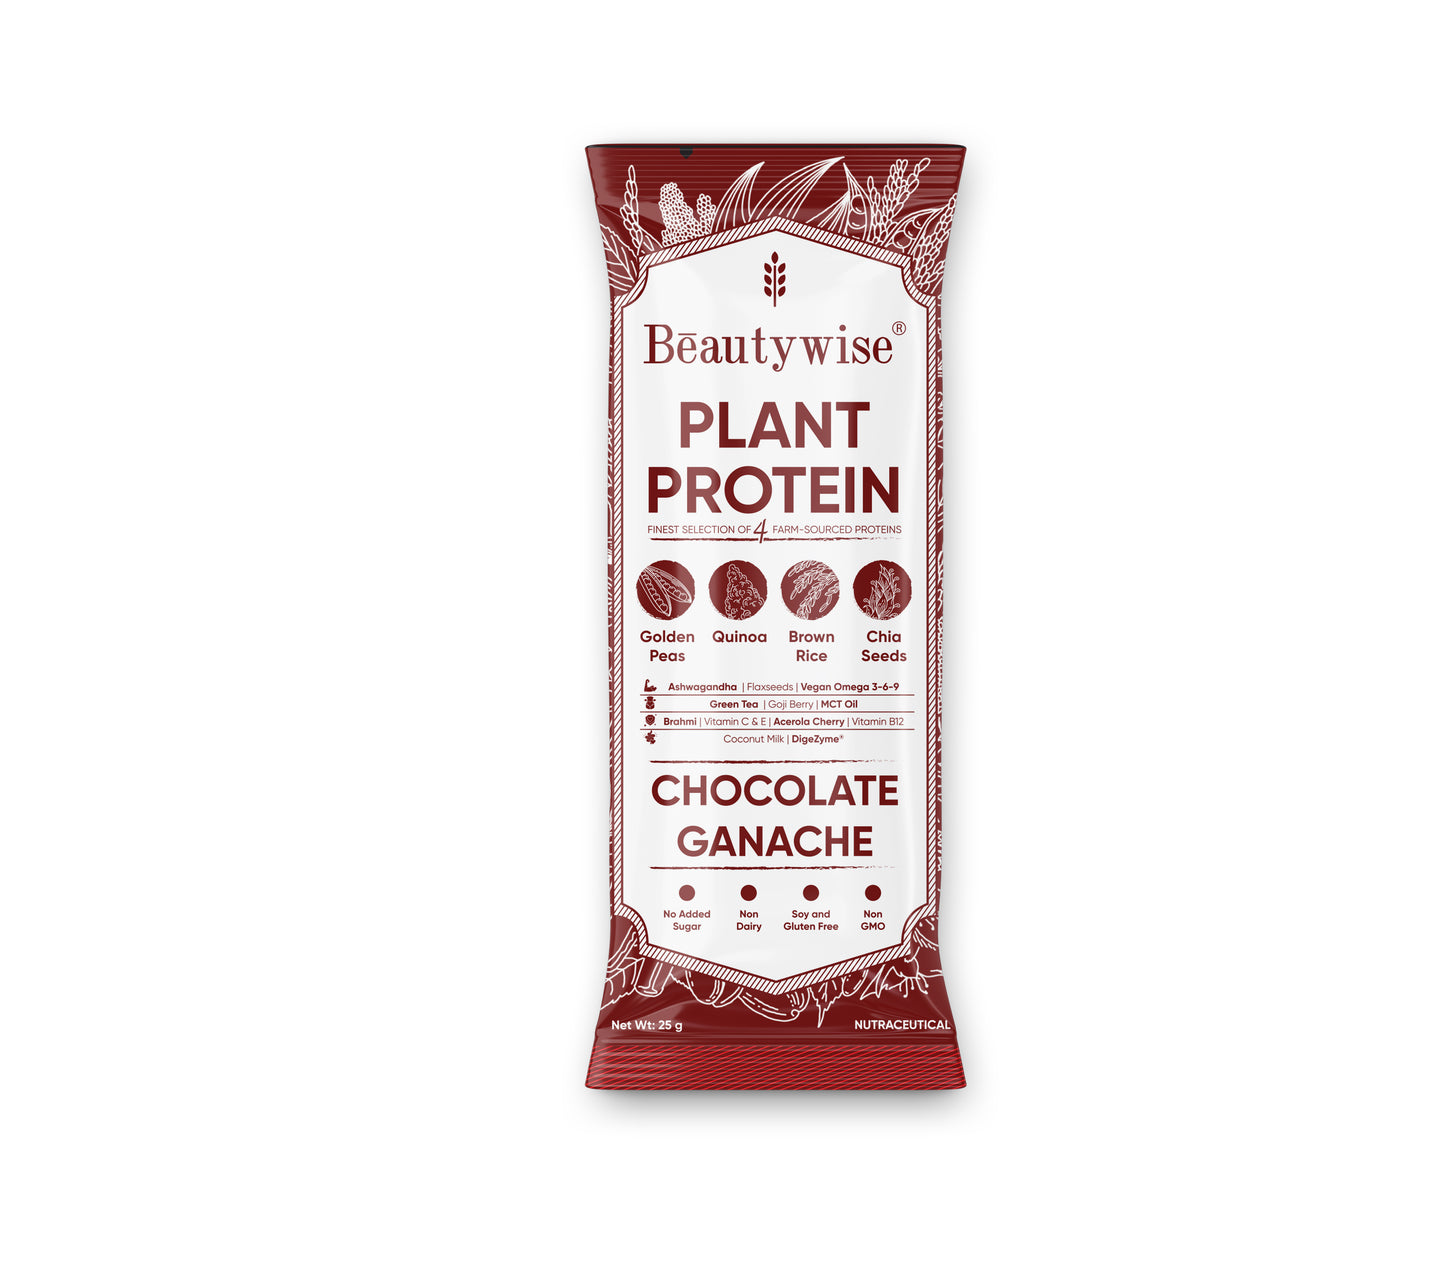 Beautwise Plant Protein Chocolate Ganache